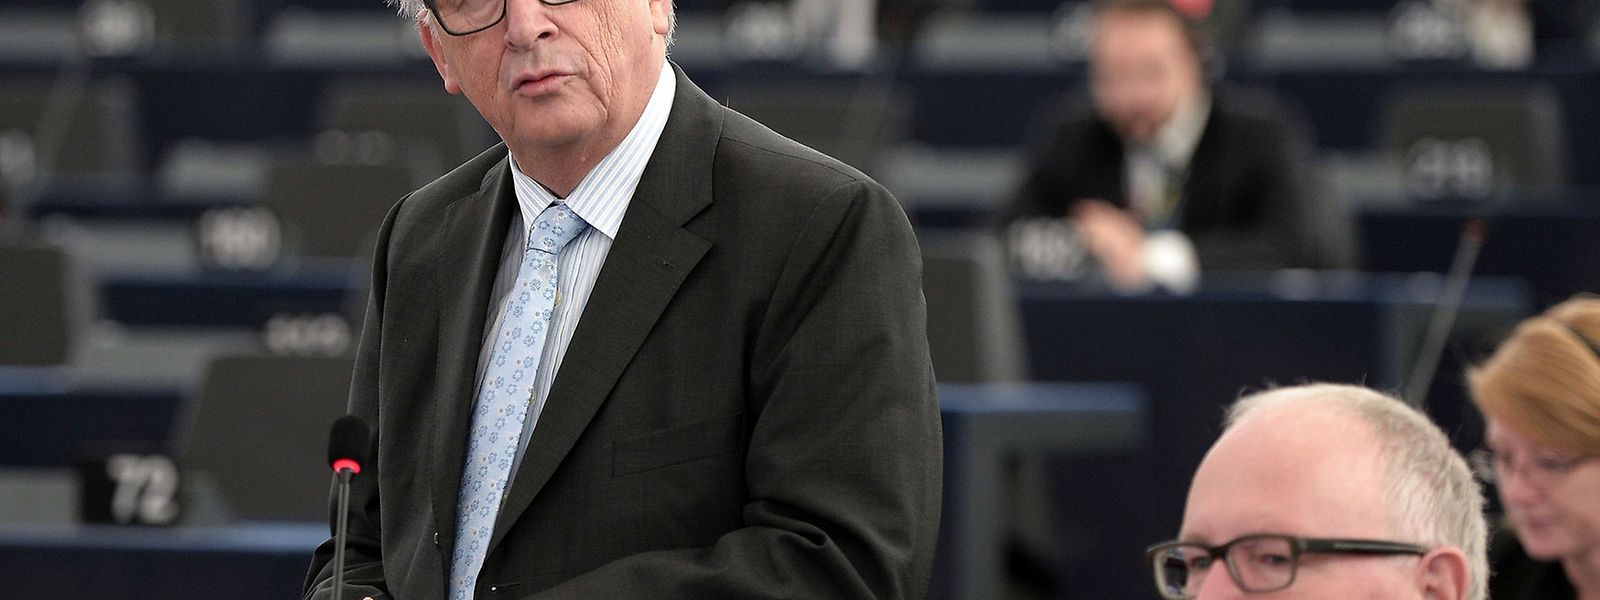 Jean-Claude Juncker sucht die Zusammenarbeit mit der Türkei, wie er am Dienstag im EU-Parlament erklärte.